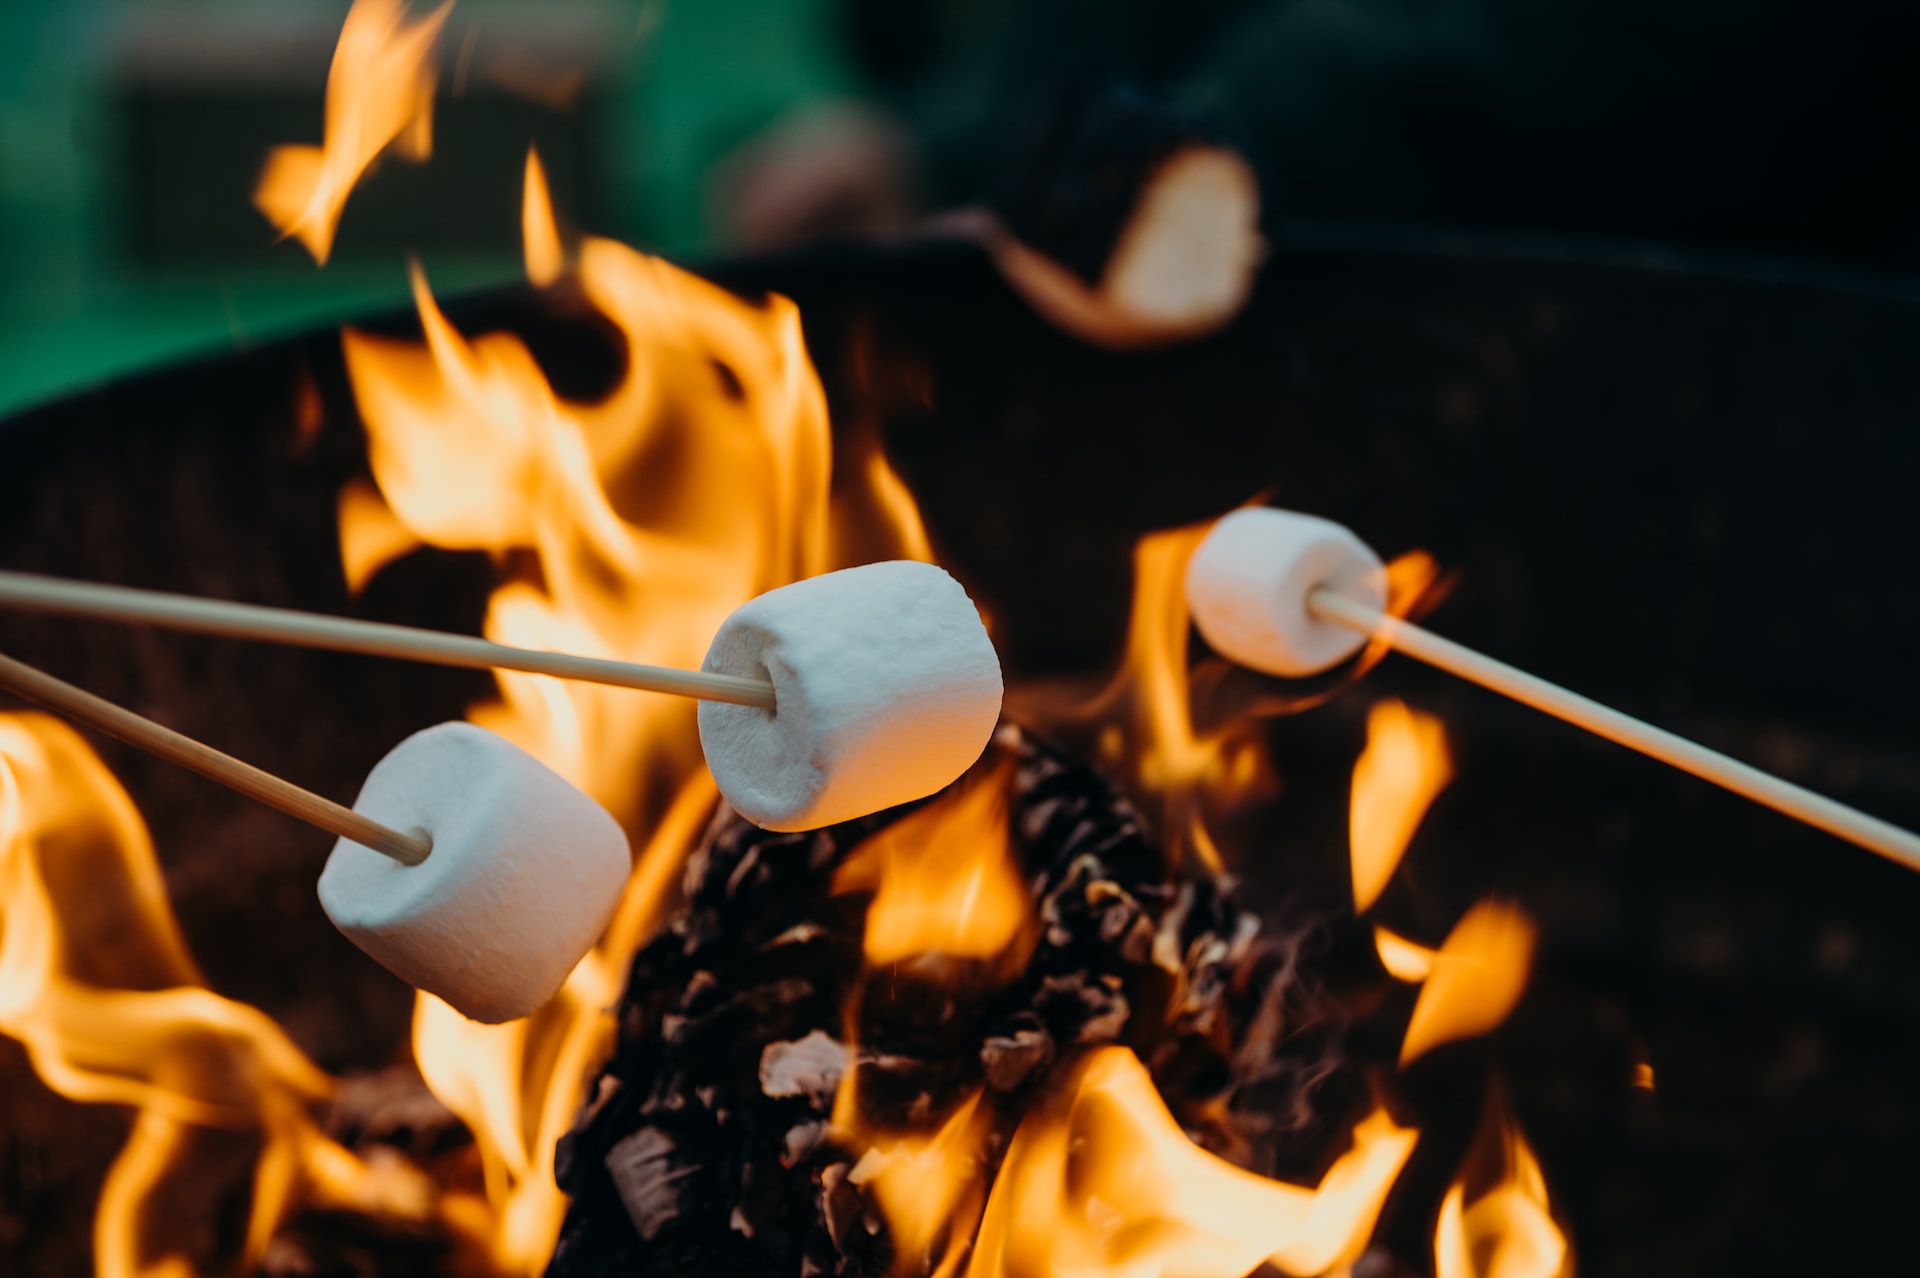 Marshmallows roasting on an open fire.